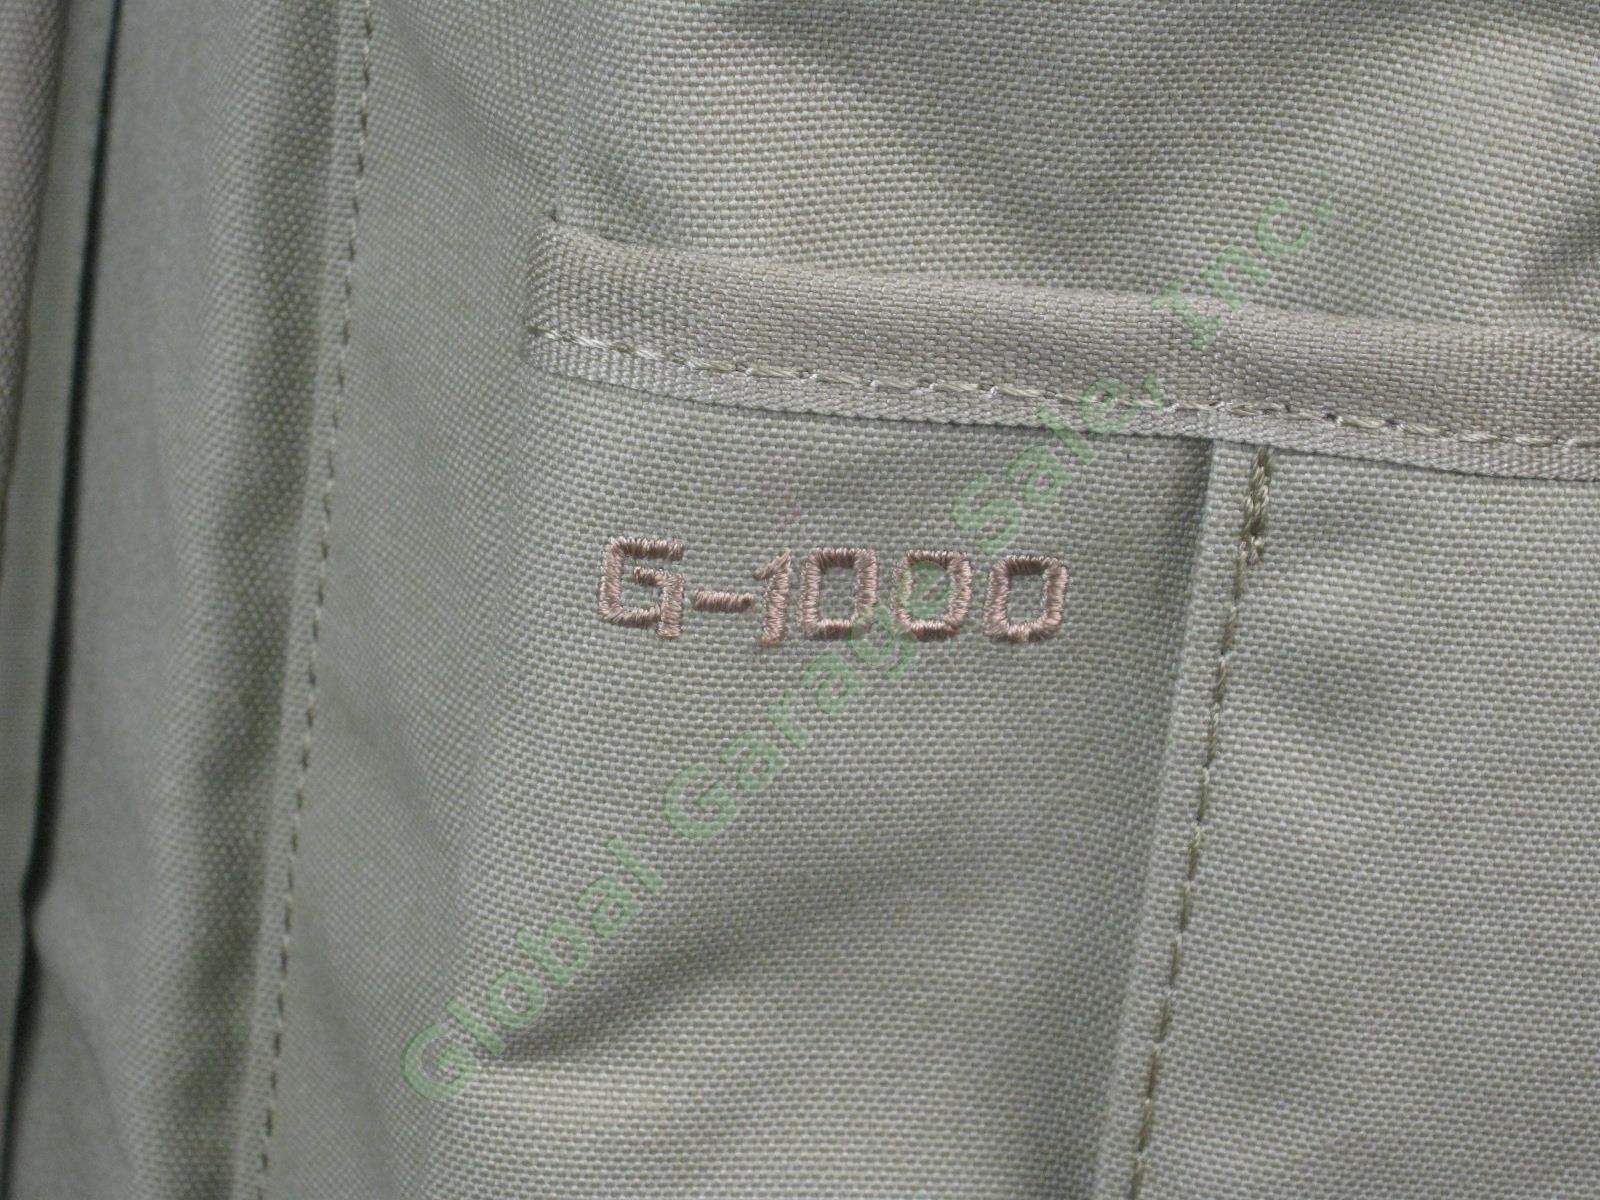 Fjallraven Rucksack No 21 Large Daypack Backpack 24206 Sand Color G-1000 VG COND 4